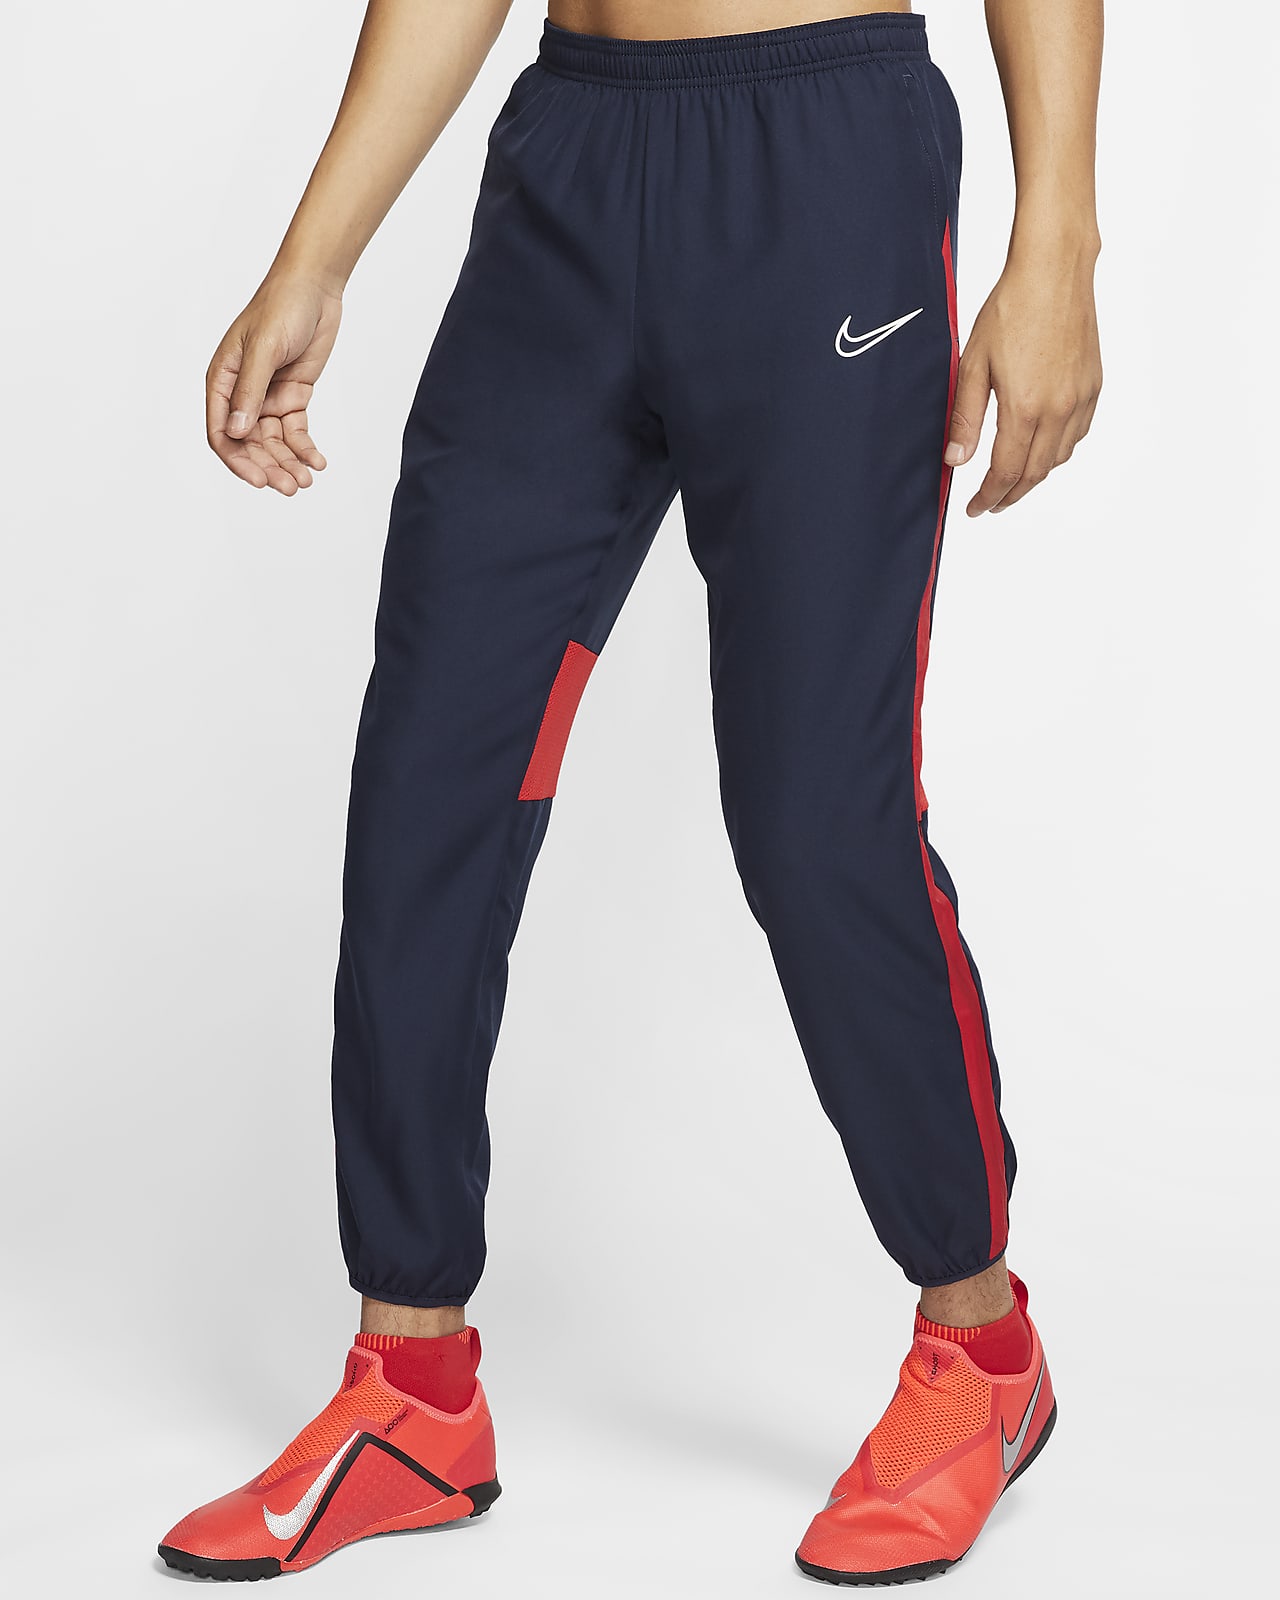 Nike Dri-FIT Academy verstellbare Herren-Fußballhose